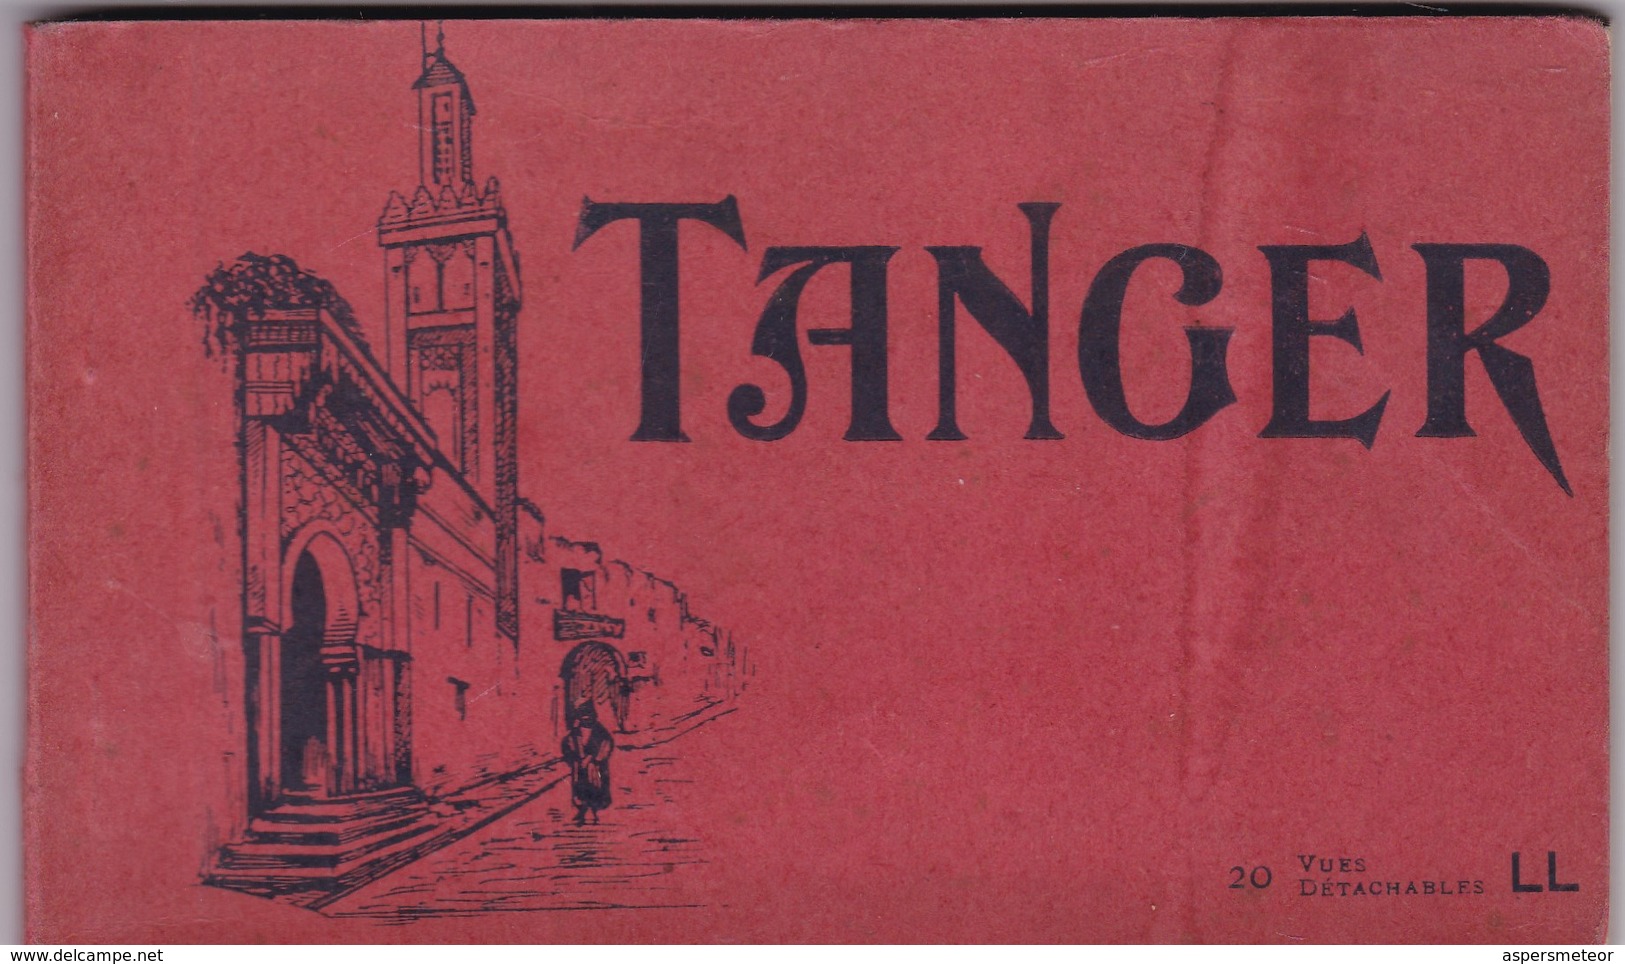 TANGER, 20 VUES DETACHABLES. LL. CIRCA 1900s. PHOTOSET GRUSS AUS LEMBRANÇA SOUVENIR - BLEUP - Tanger